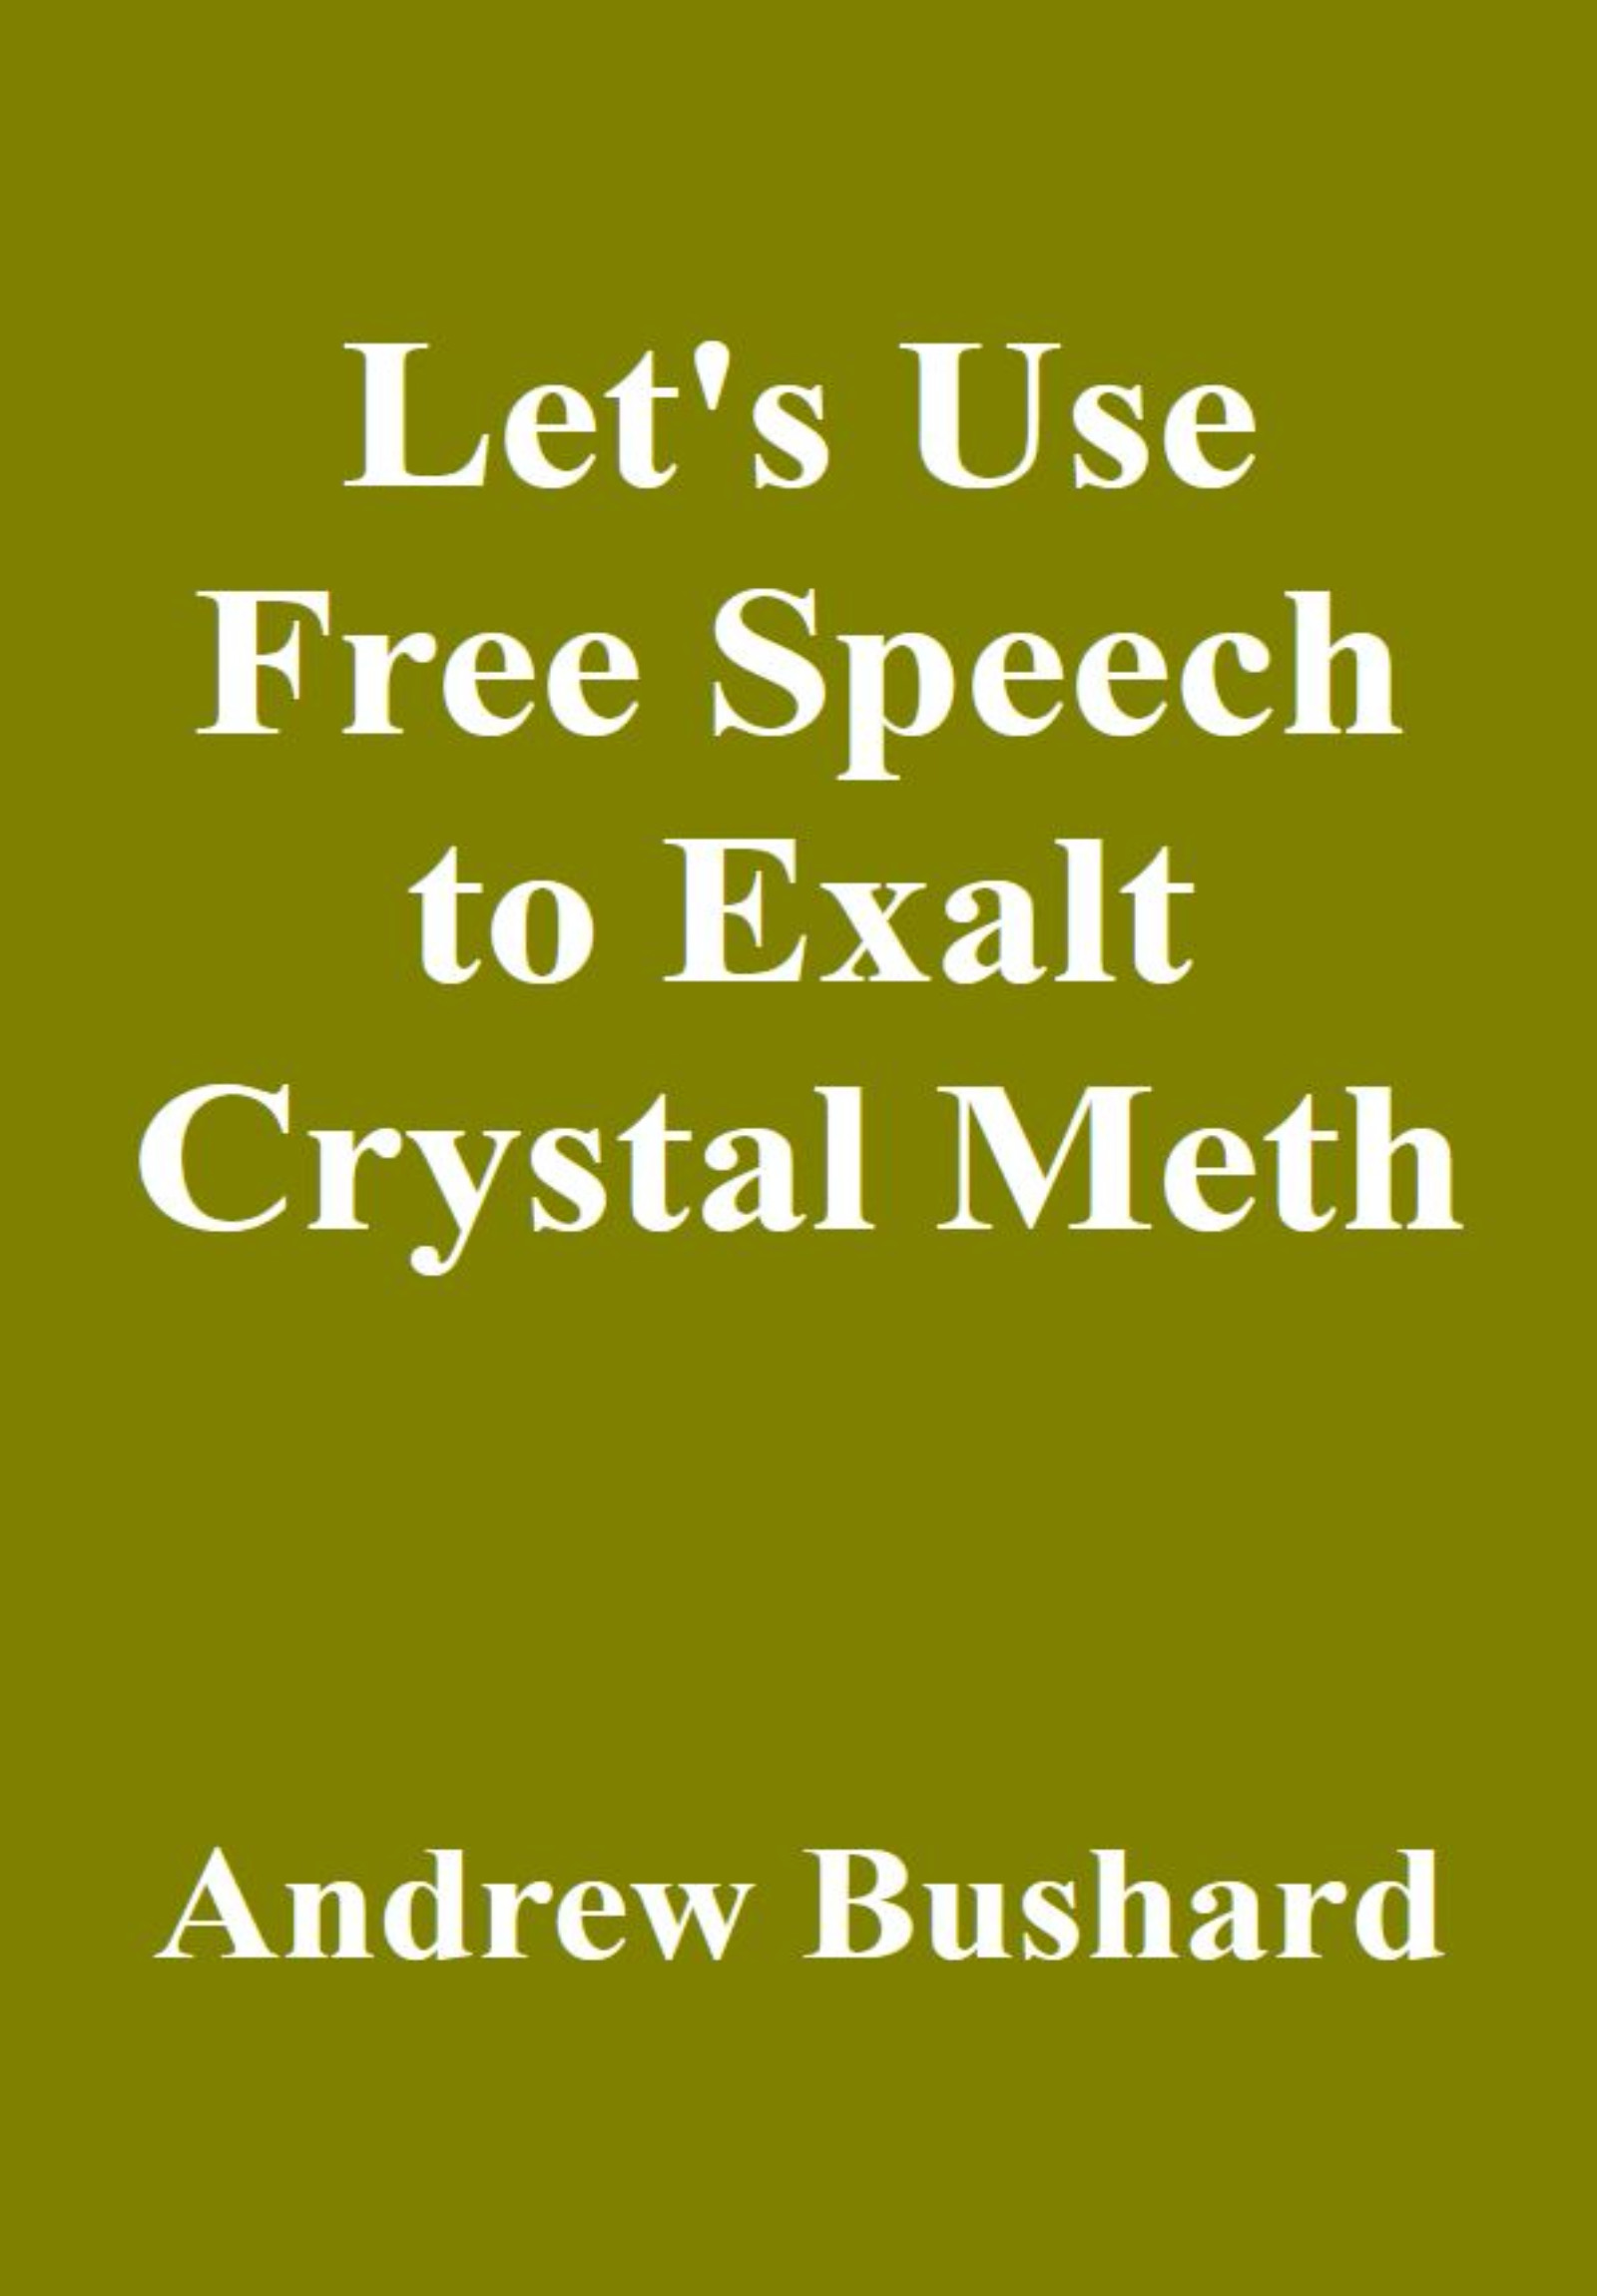 crystal meth drug book